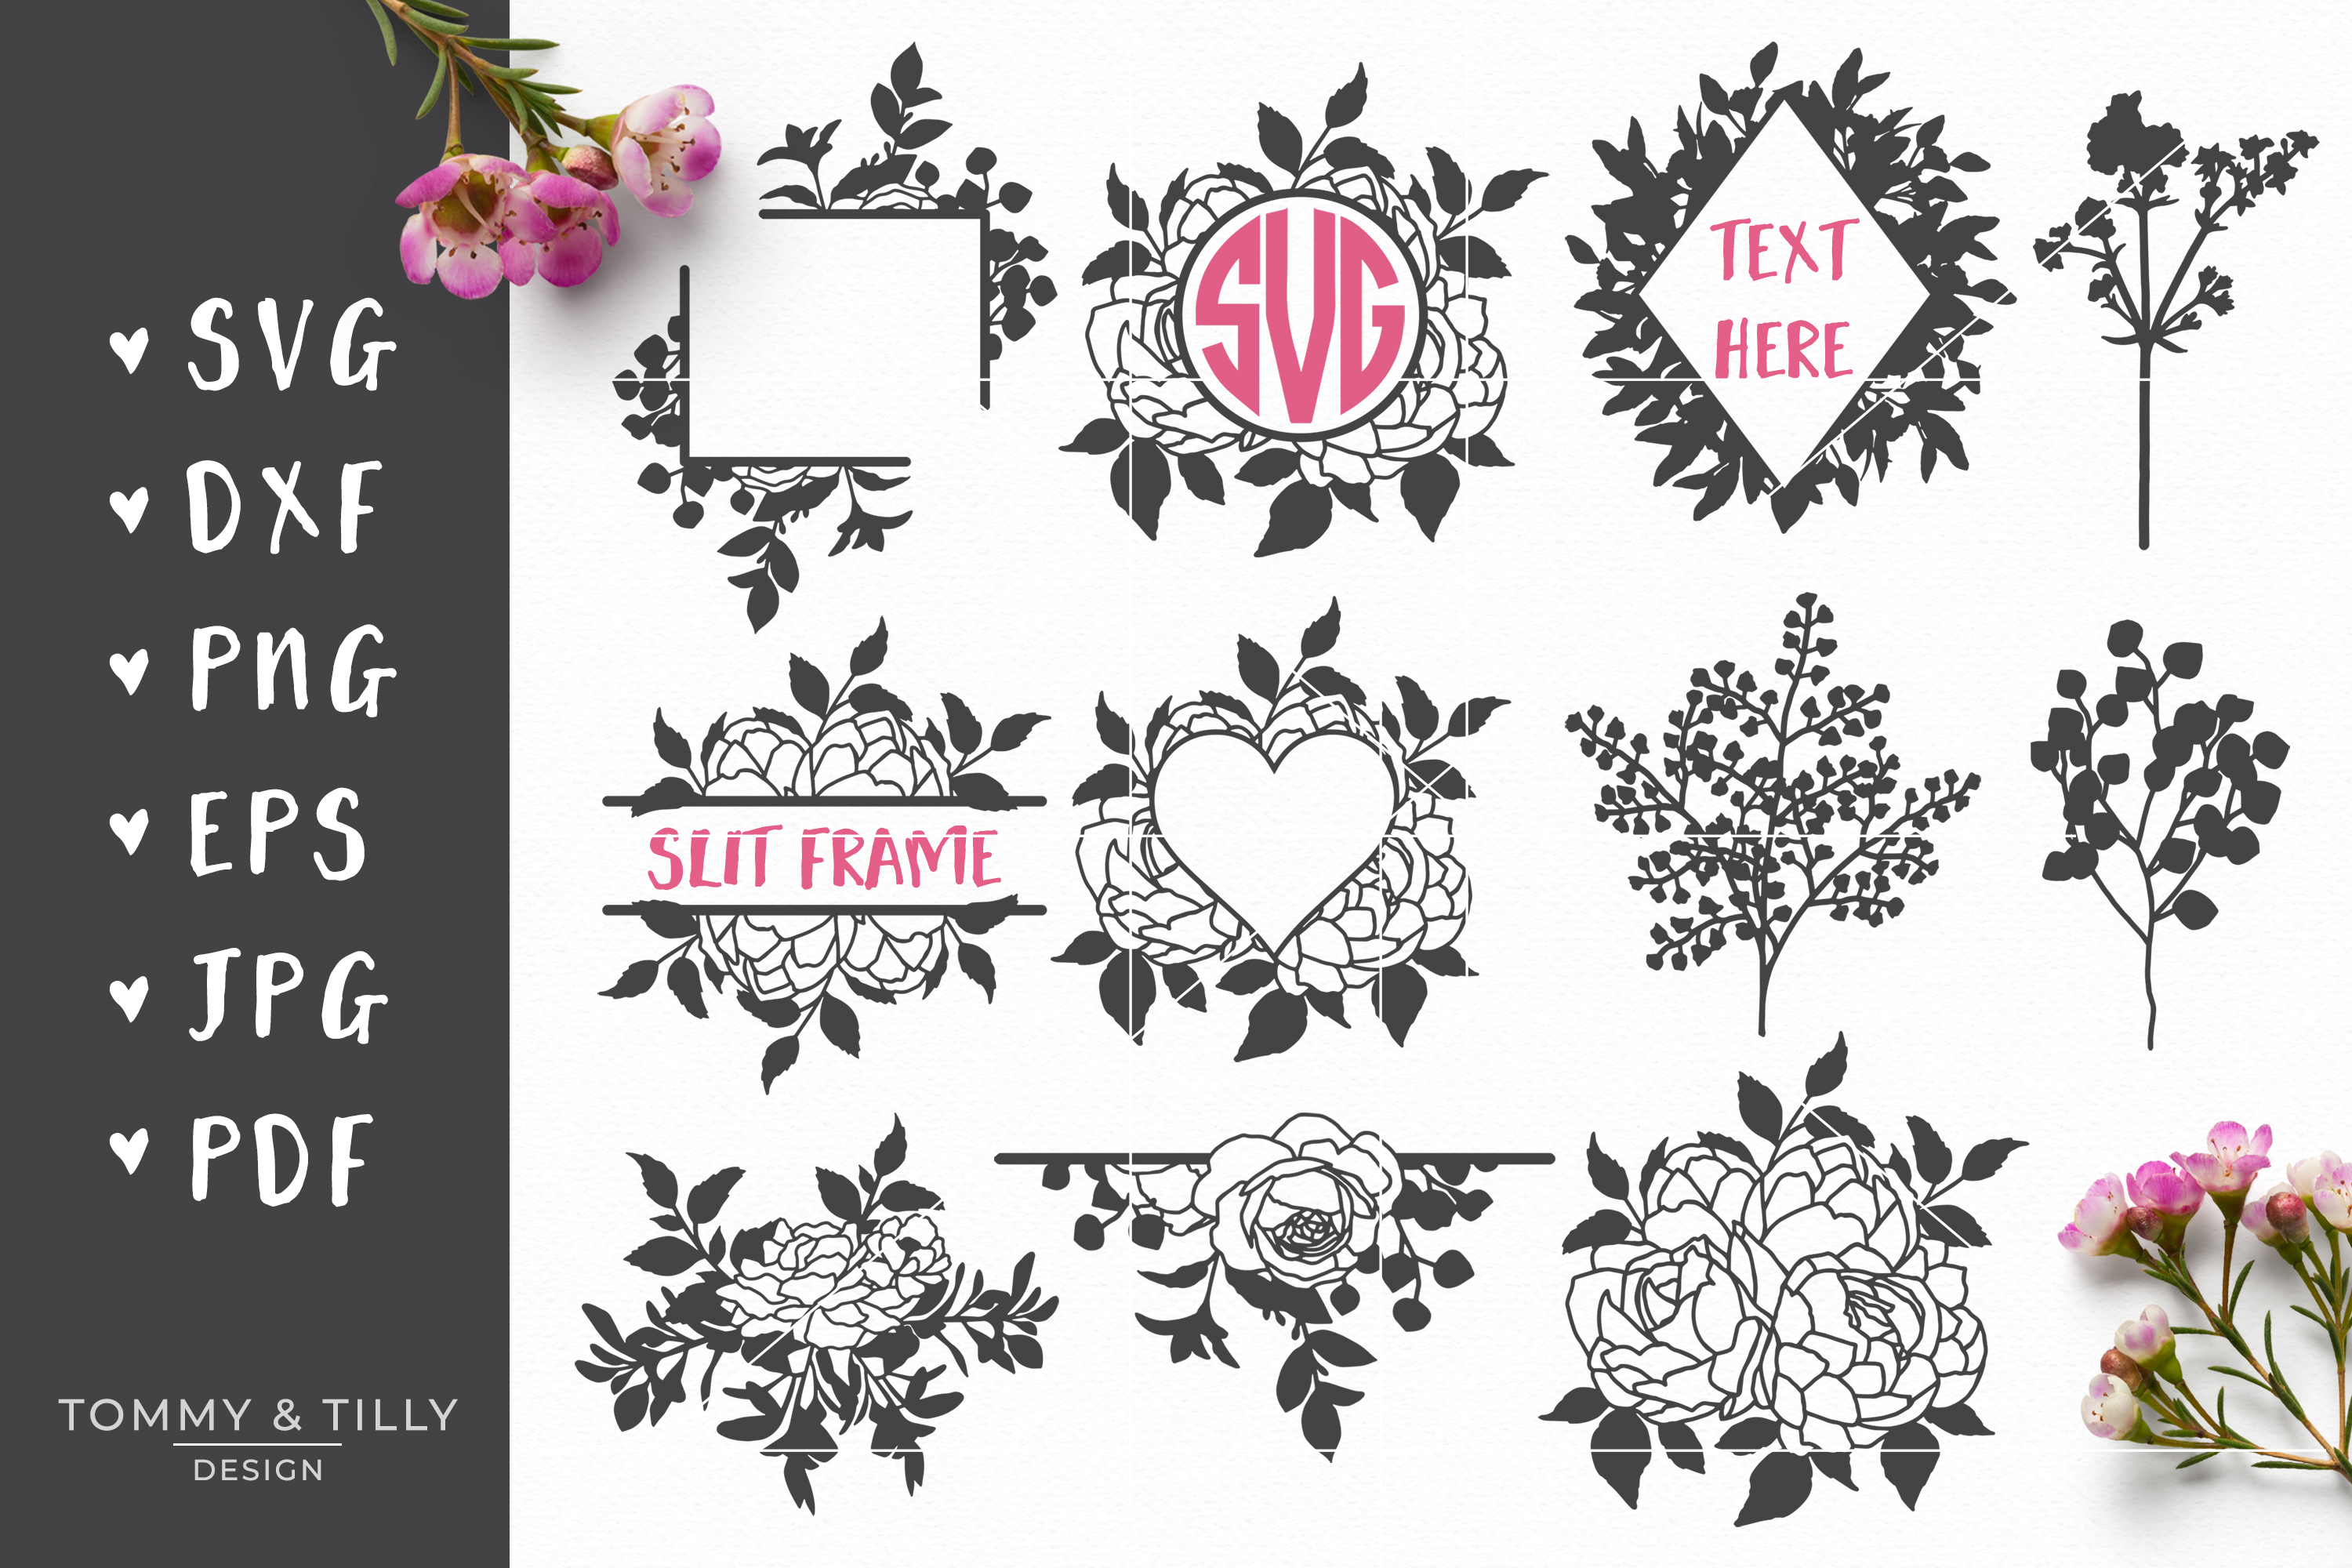 Floral Mega Bundle - SVG DXF PNG EPS JPG PDF Cut Files